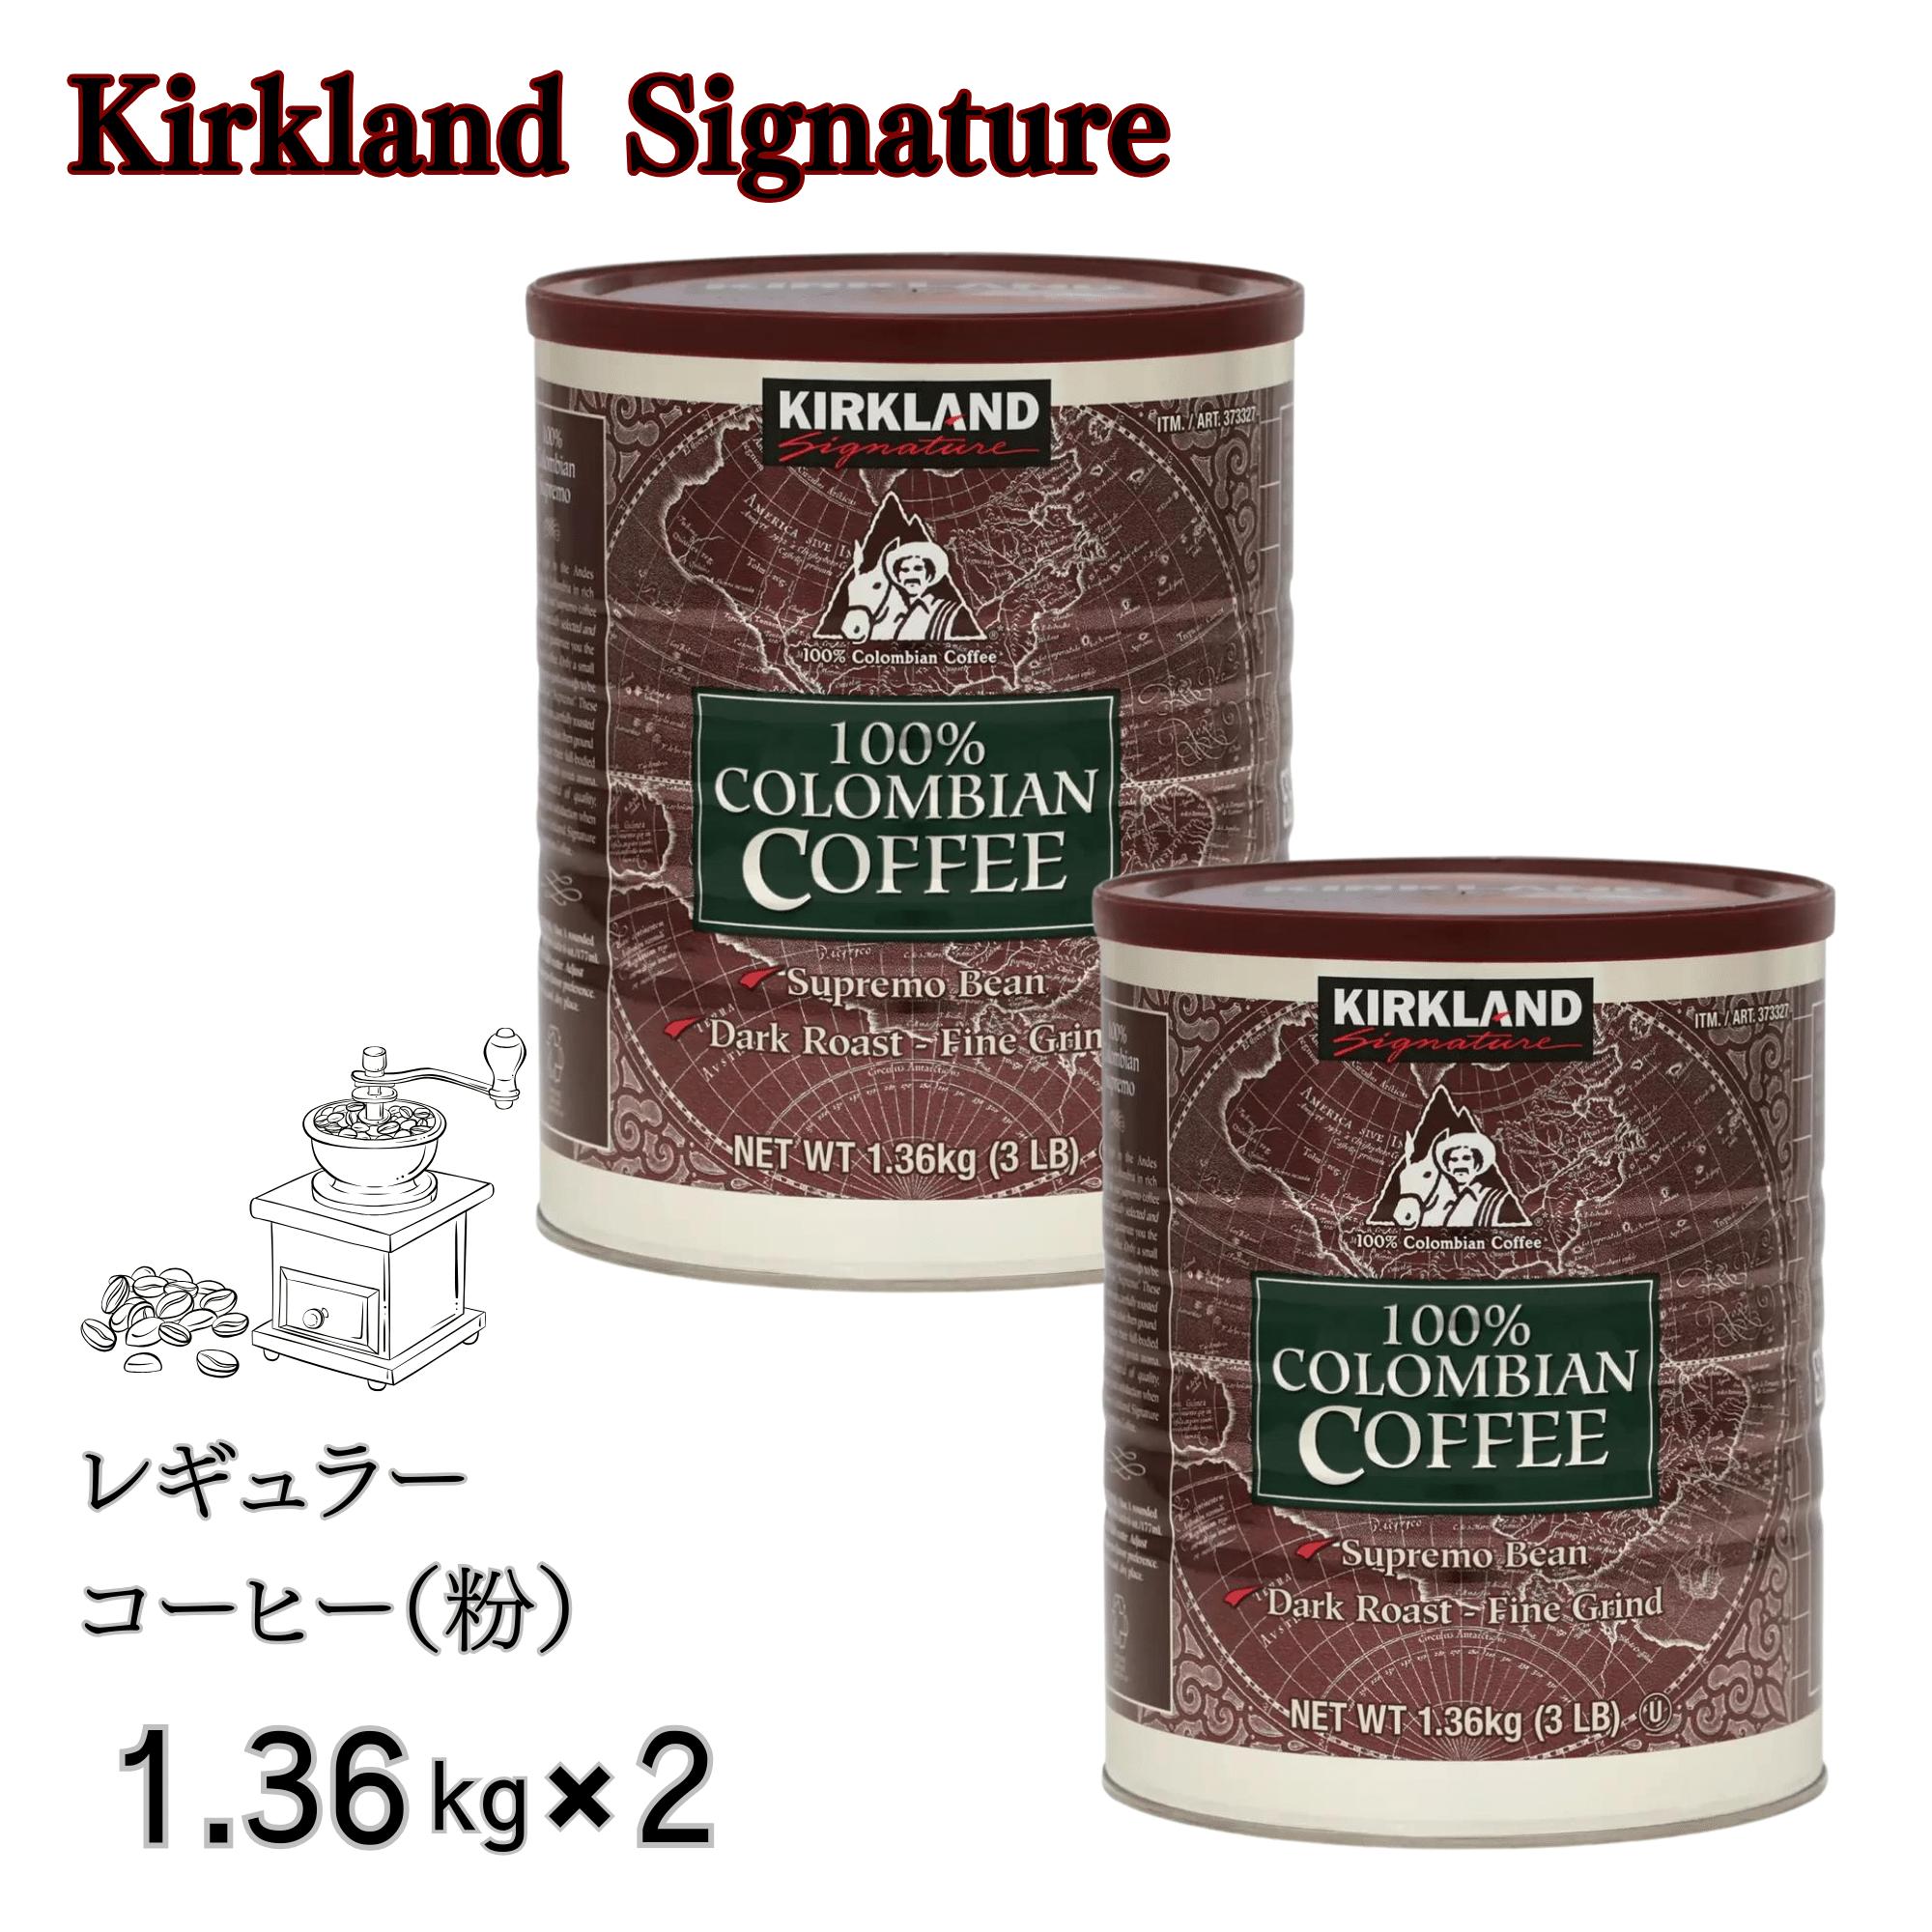 カークランド コロンビア コーヒー 粉 1.36kg x 2個セット 細挽き ダークロースト 深煎り スプレモ コロンビア豆 100% コストコ